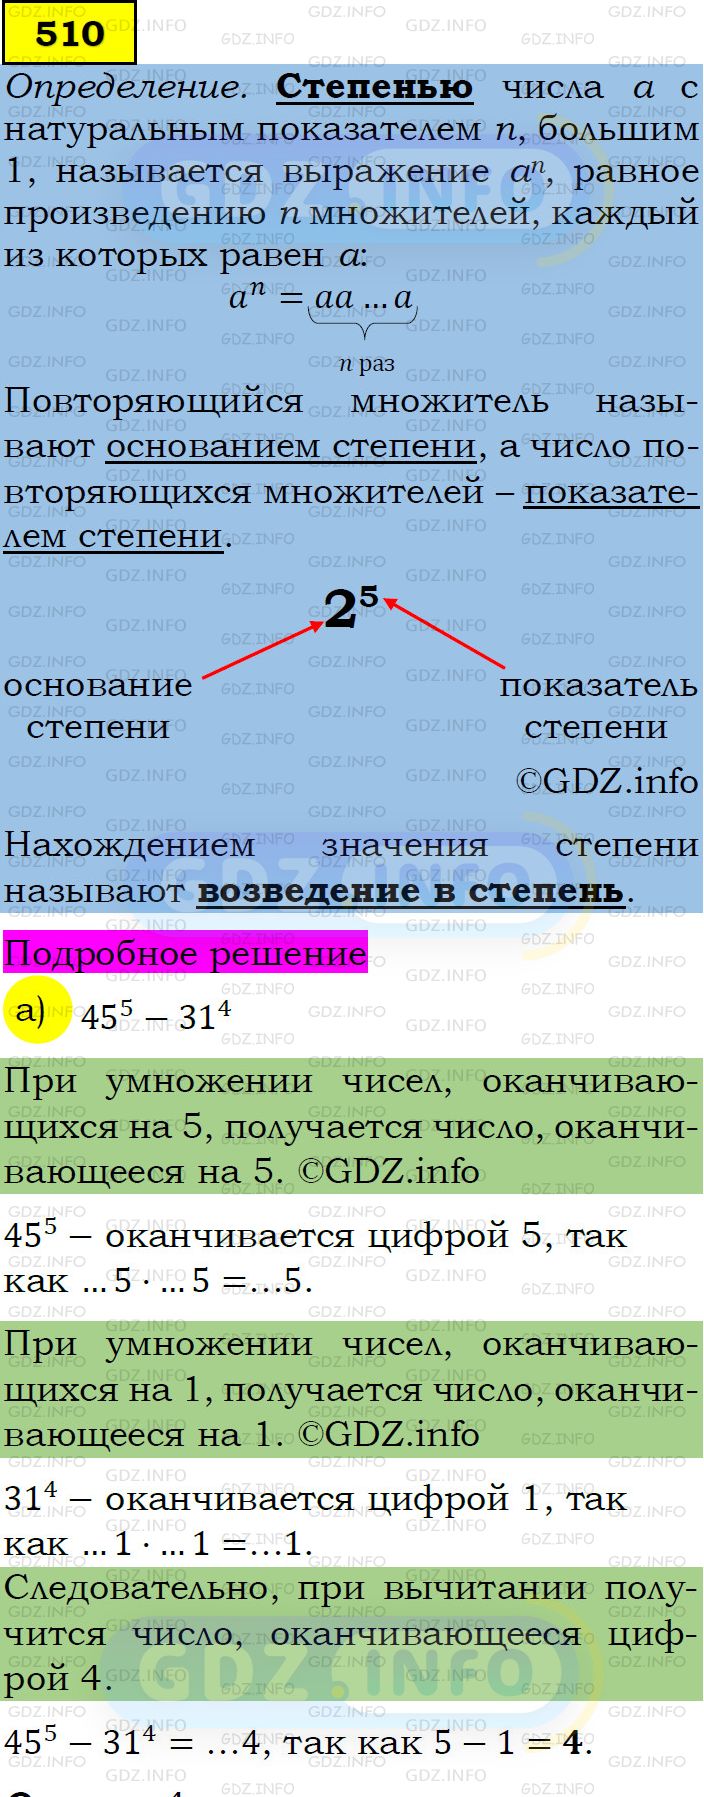 Фото подробного решения: Номер задания №510 из ГДЗ по Алгебре 7 класс: Макарычев Ю.Н.